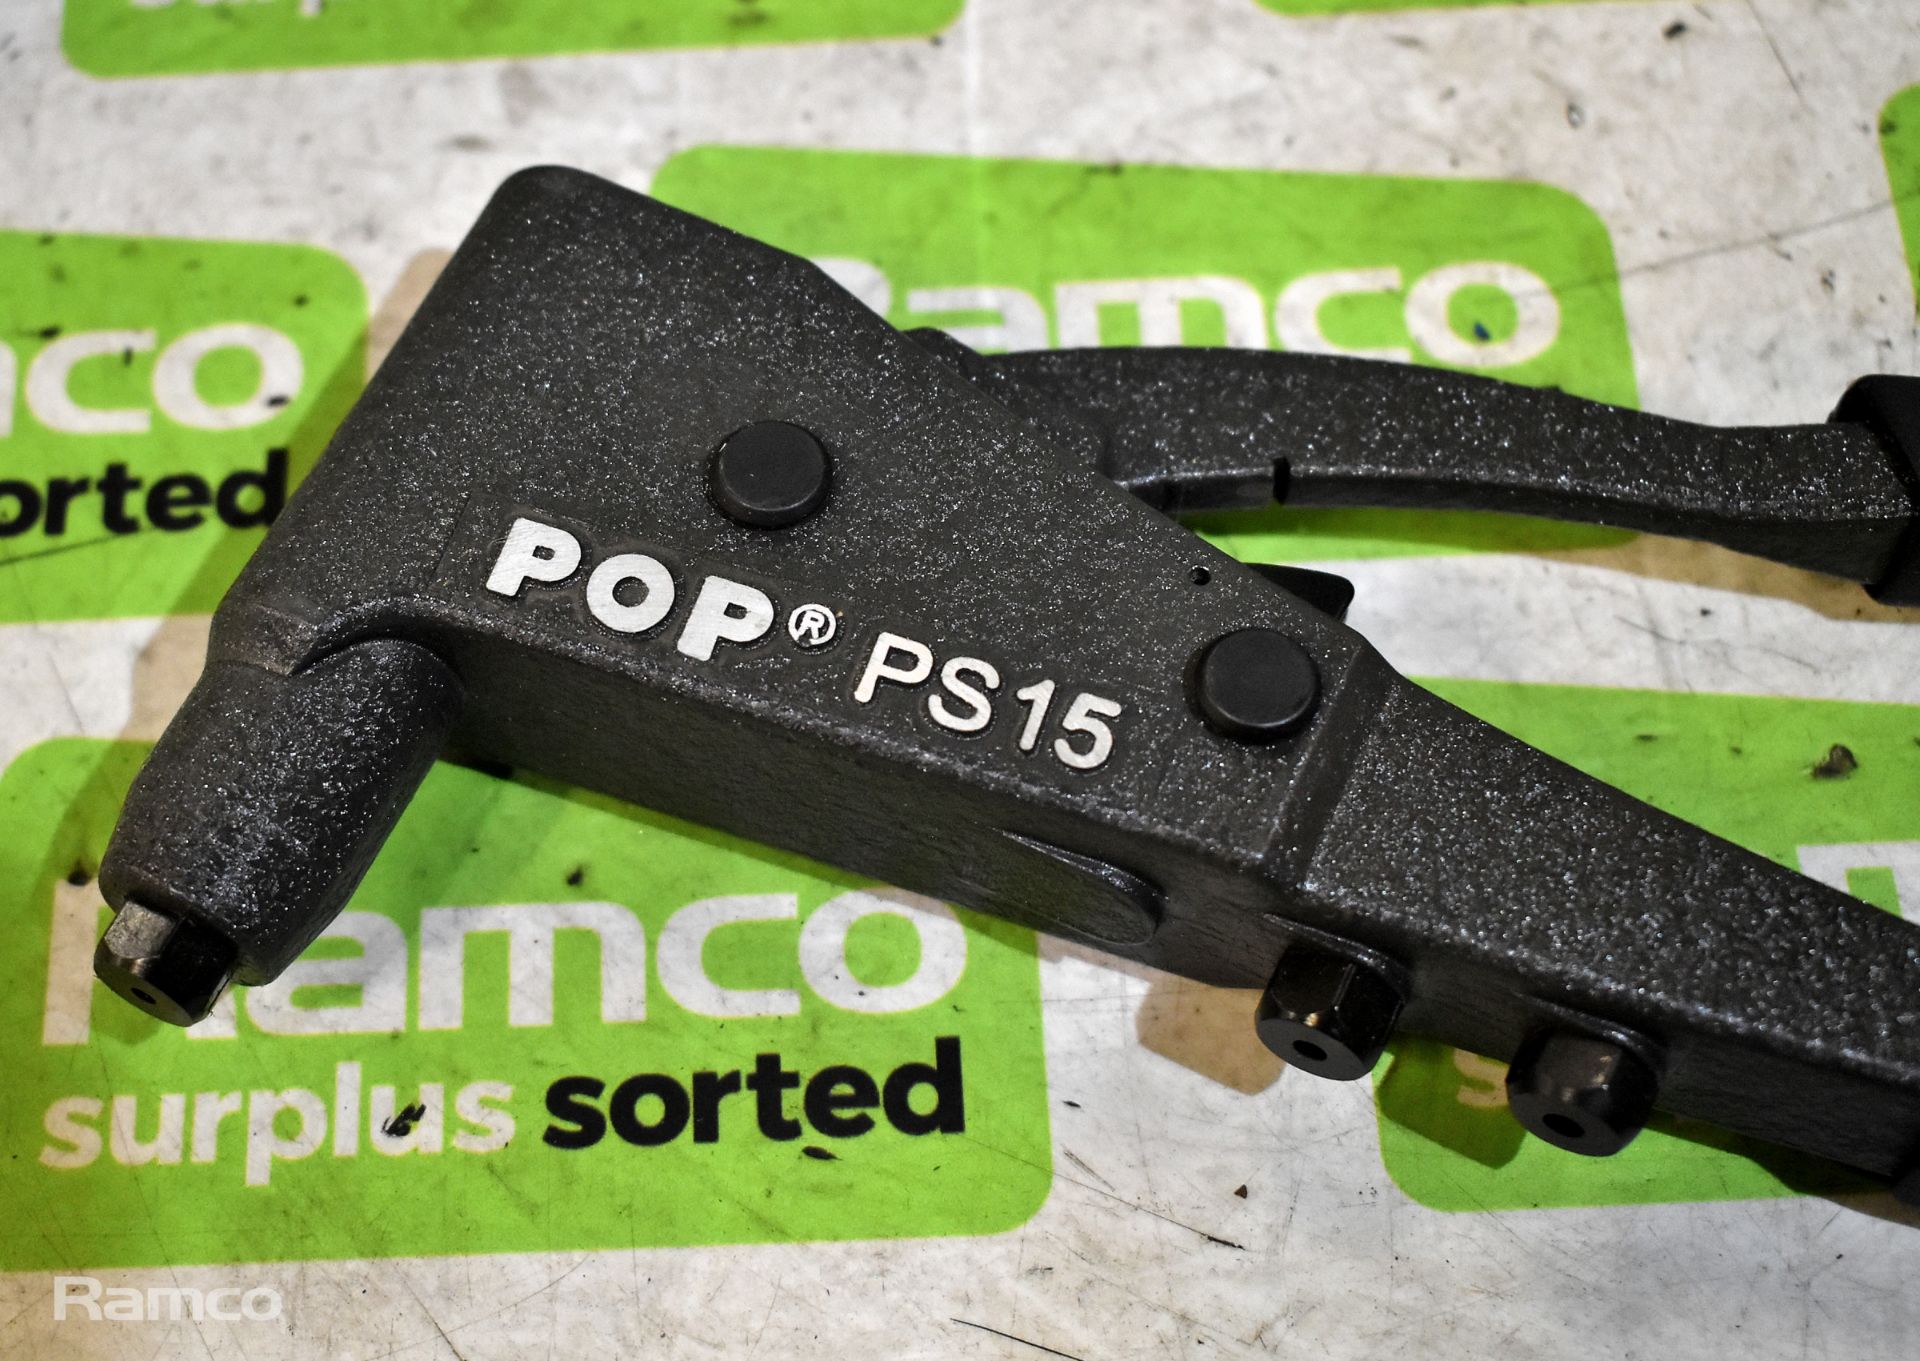 2x POP Set PS15 professional hand plier rivet tools - Image 2 of 3